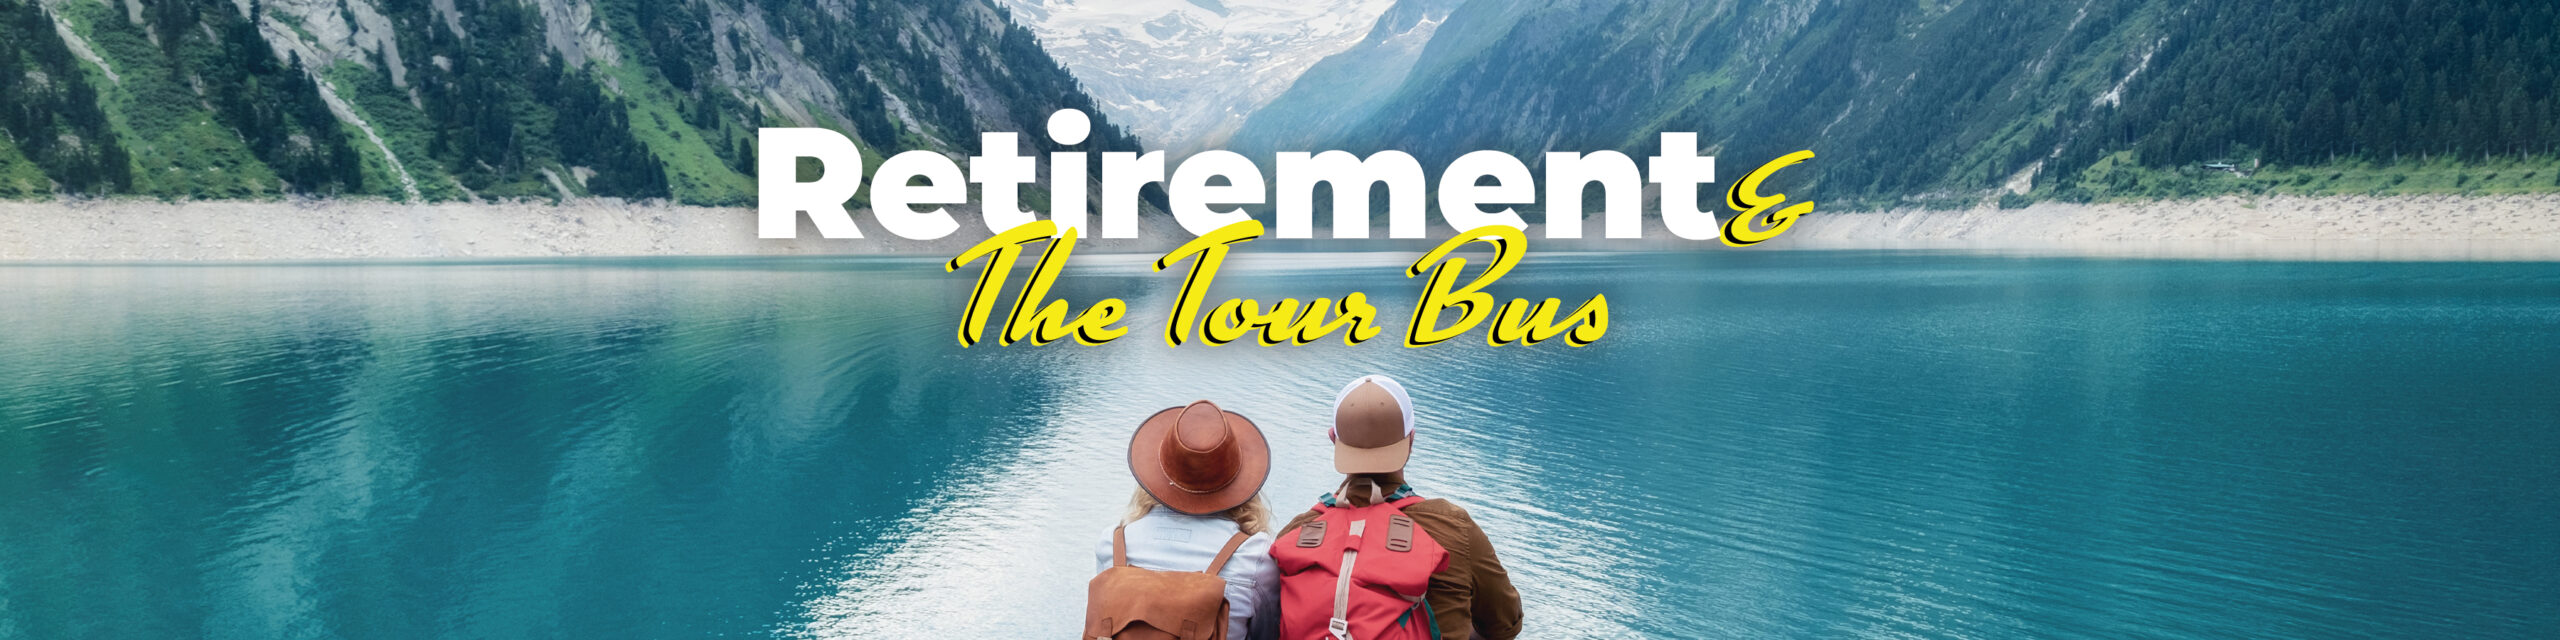 Retirement & The Tour Bus